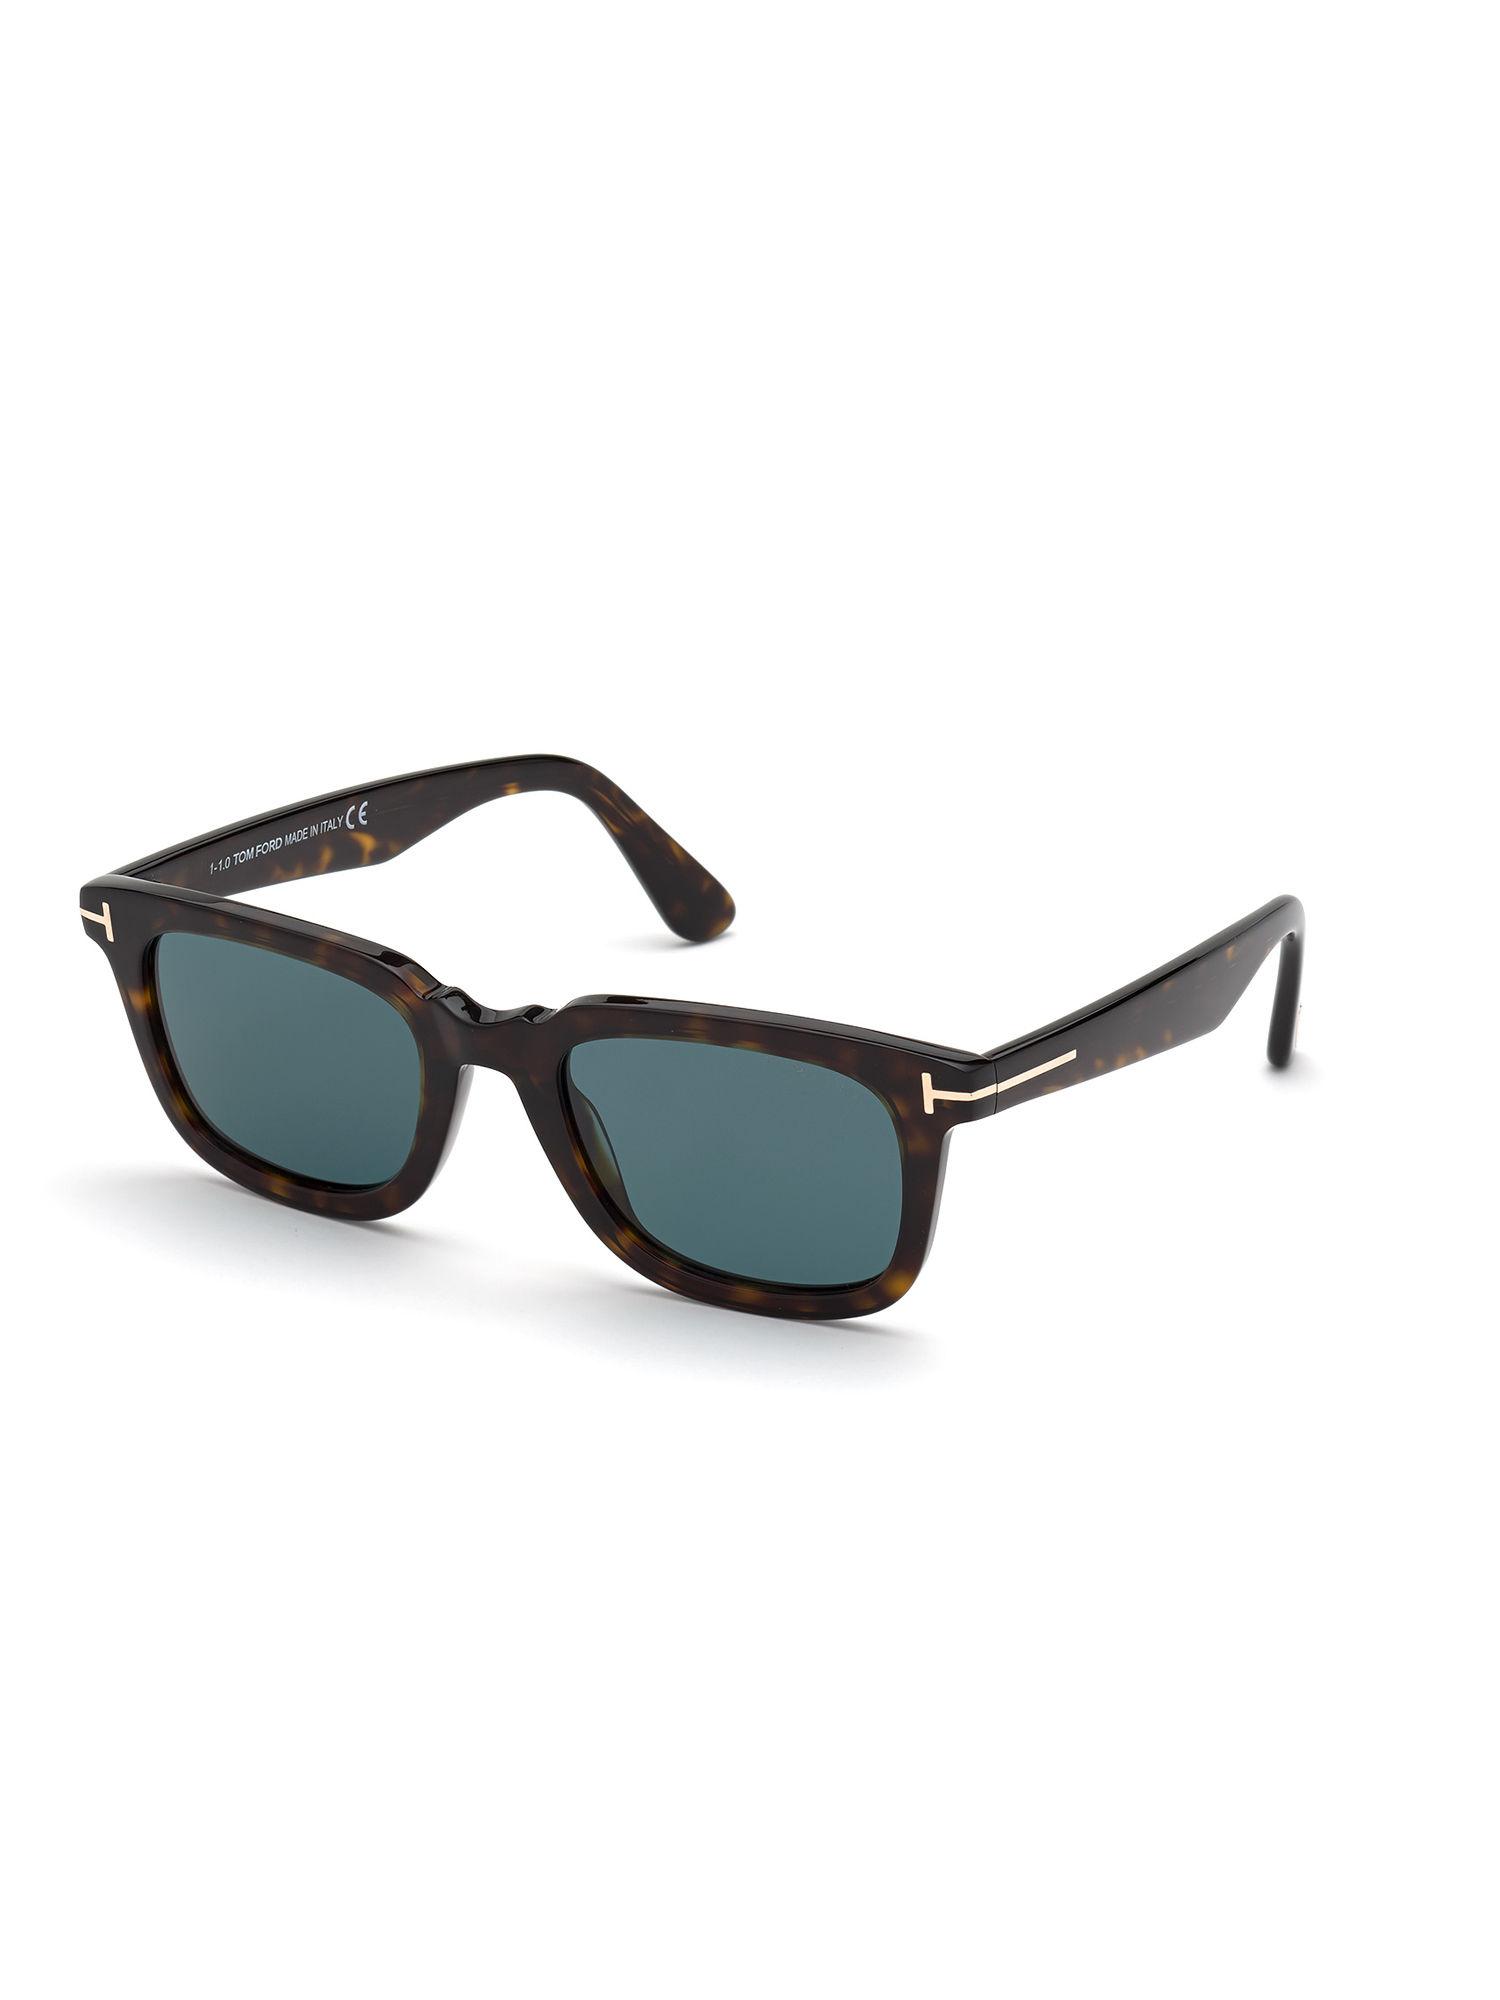 brown-plastic-sunglasses-ft0817-51-52v